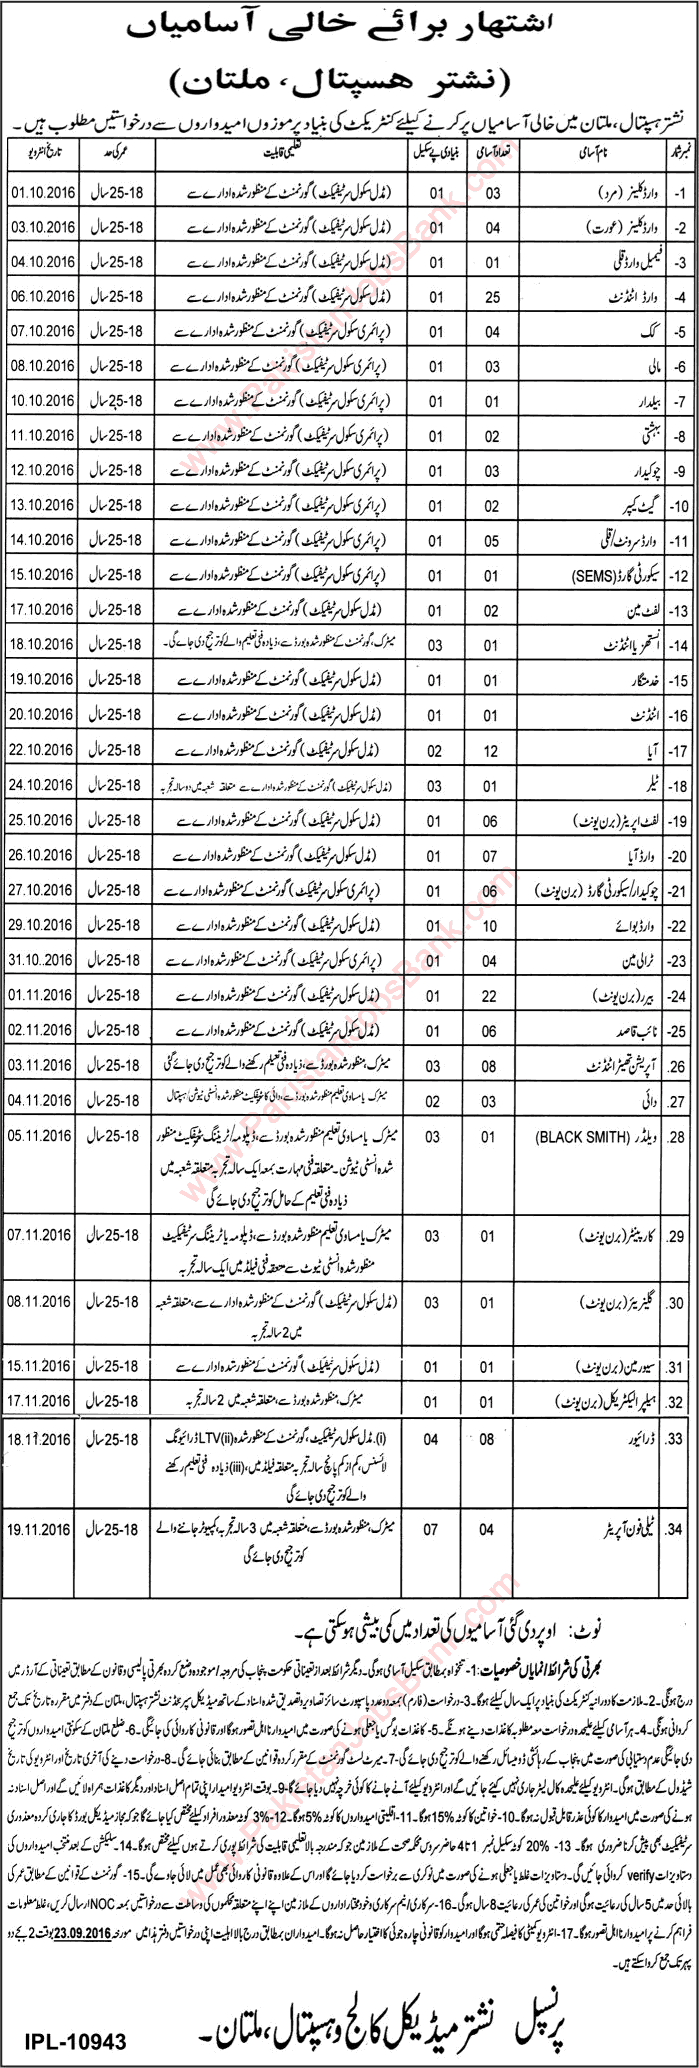 Nishtar Hospital Multan Jobs September 2016 Ward Attendants, Bearers, Naib Qasid & Others Latest